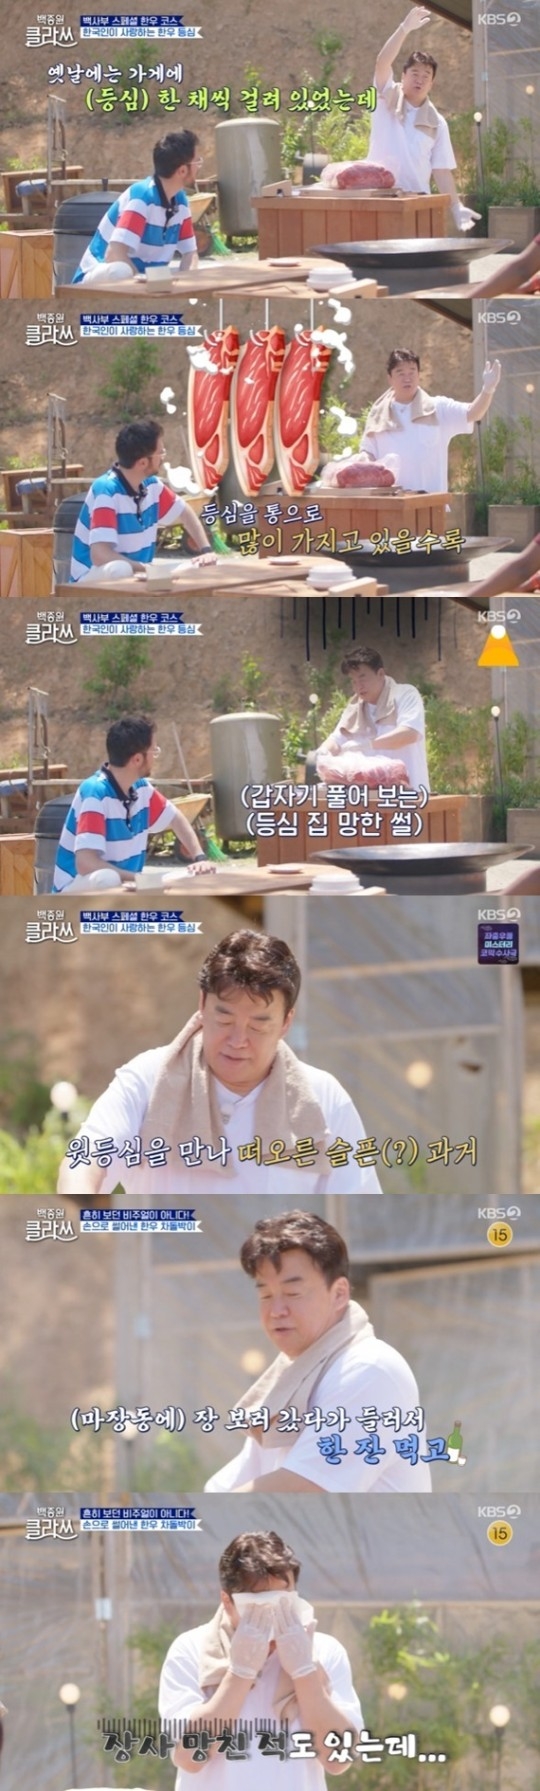 KBS 2TV 예능 프로그램 ‘백종원 클라쓰’ 캡처.